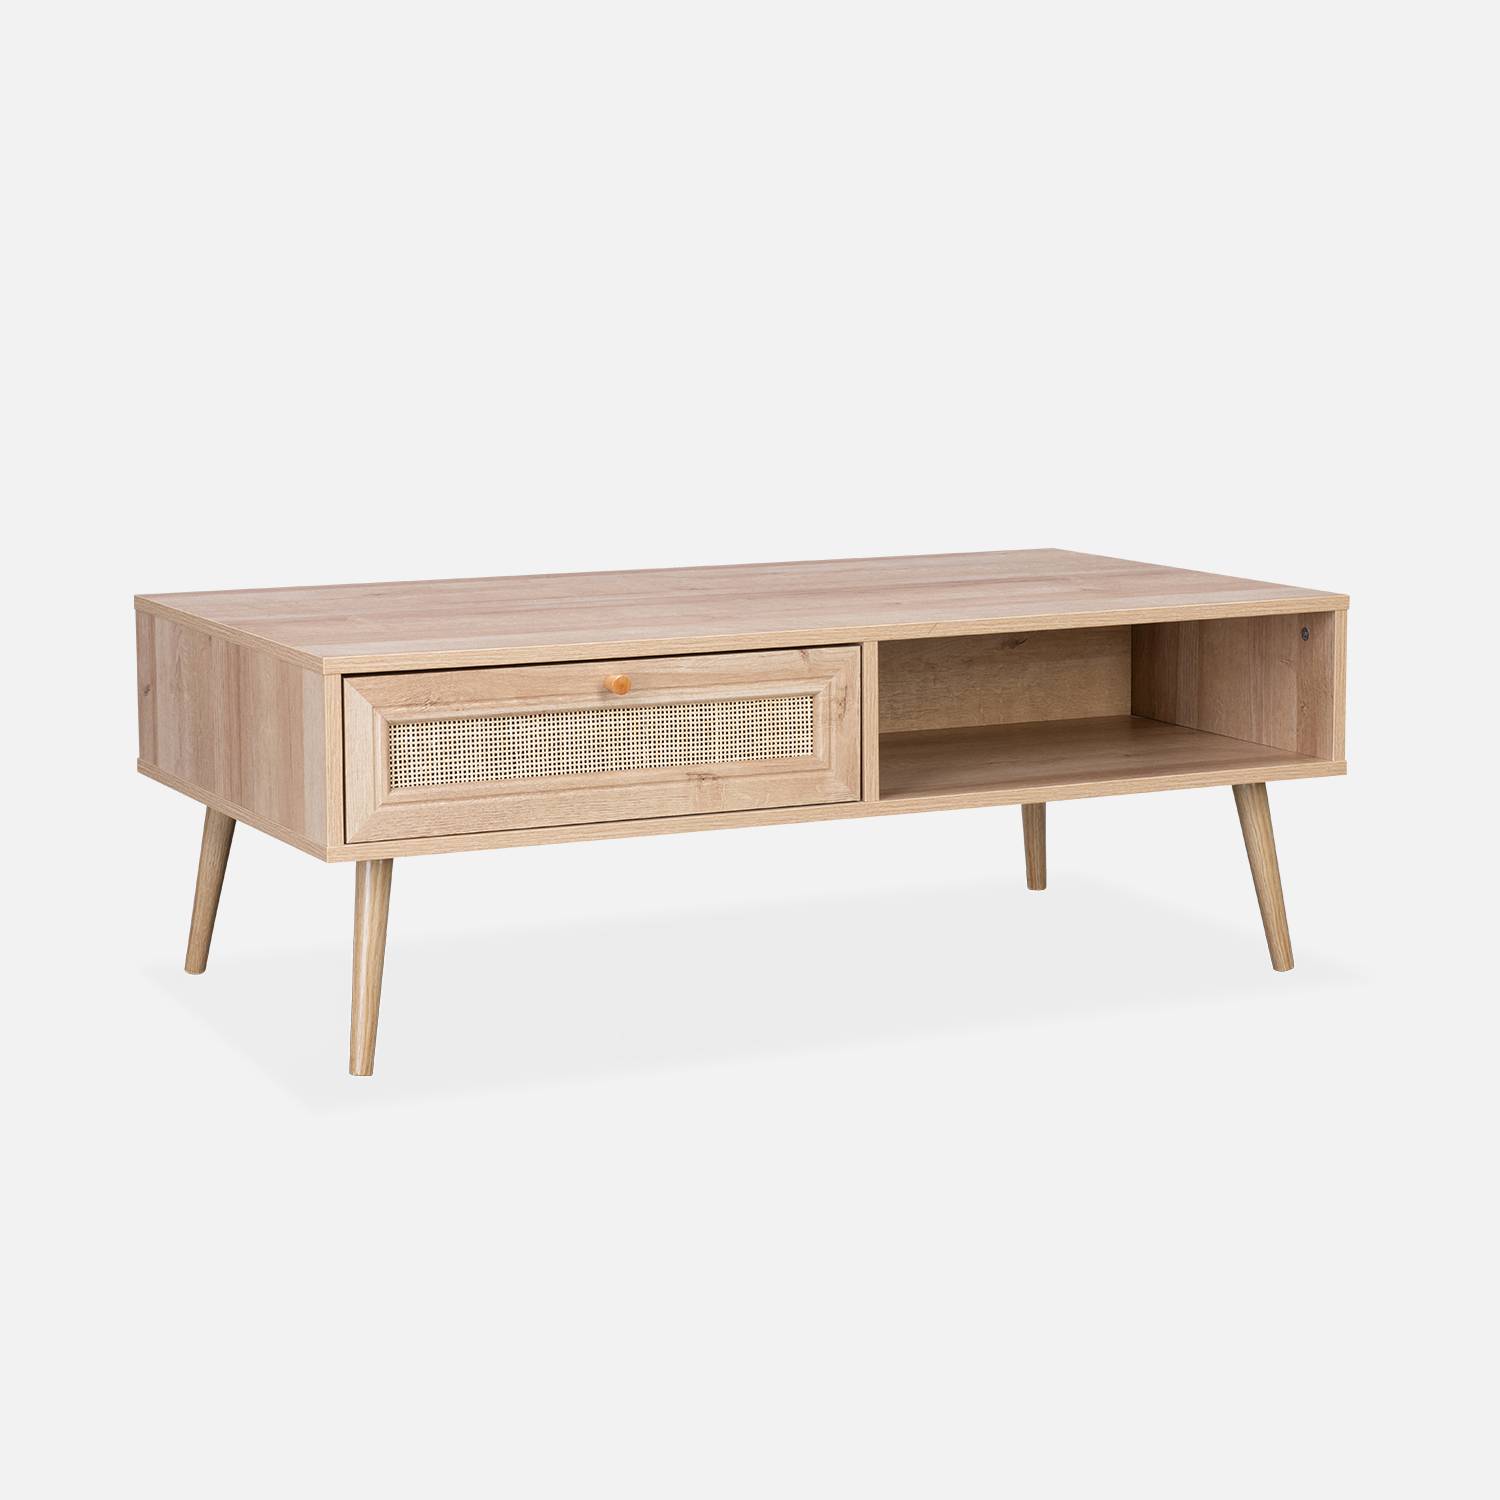 Table basse en cannage 110 x 59 x 39 cm - Bohème - Naturel, 1 tiroir, 1 espace de rangement, pieds scandinaves,sweeek,Photo2